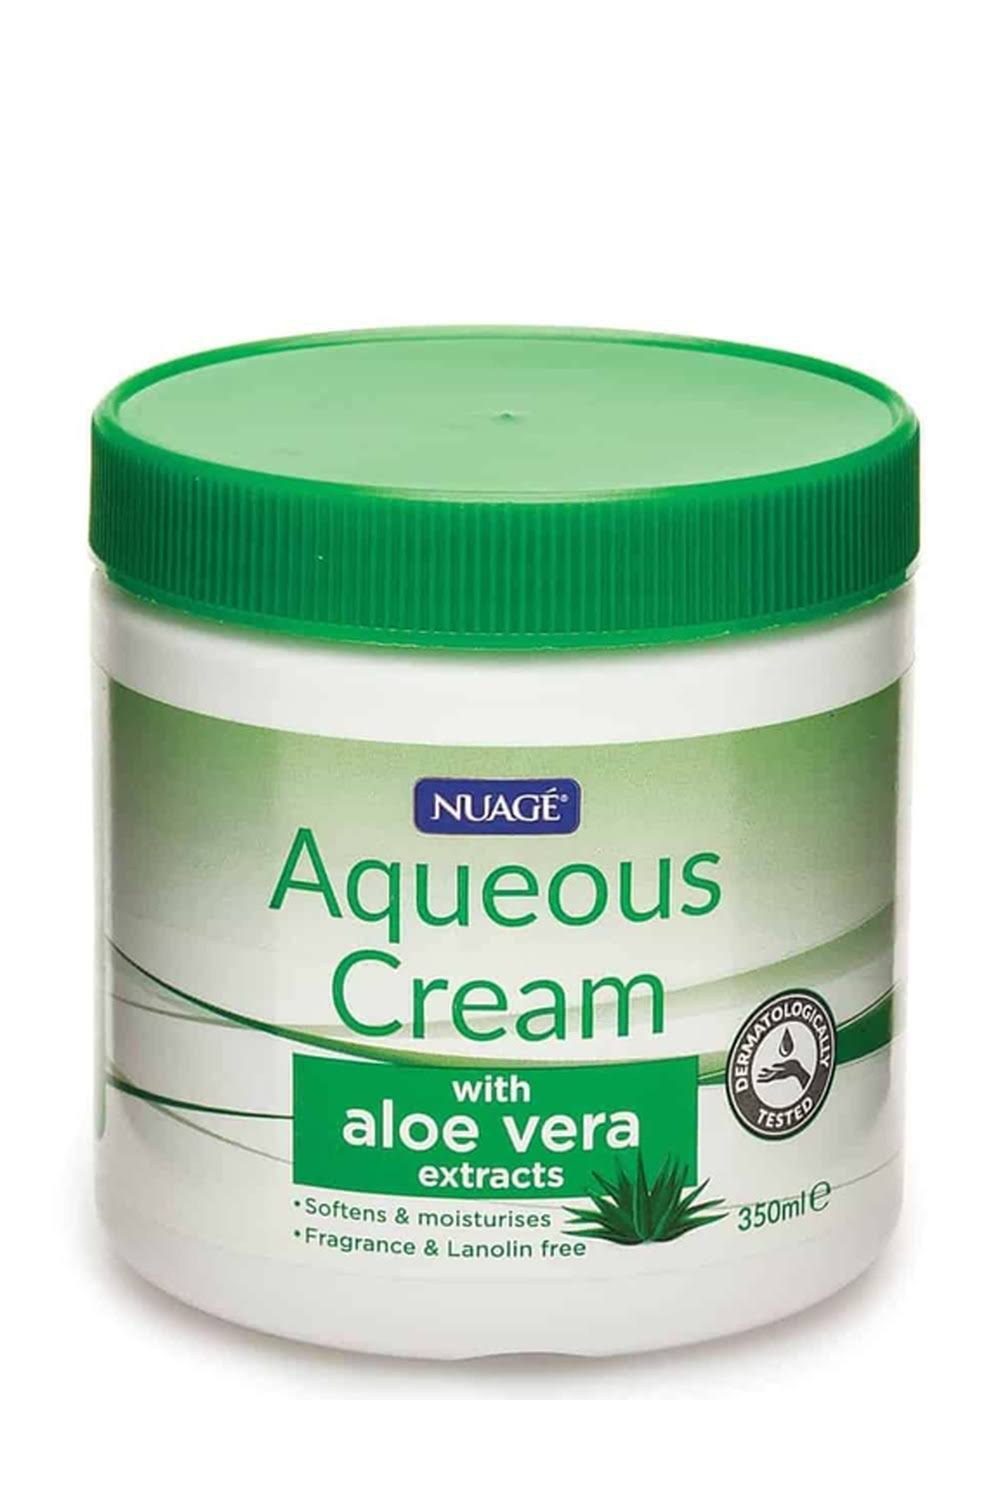 Nuage Aqueous Cream with Aloe Vera 350ml